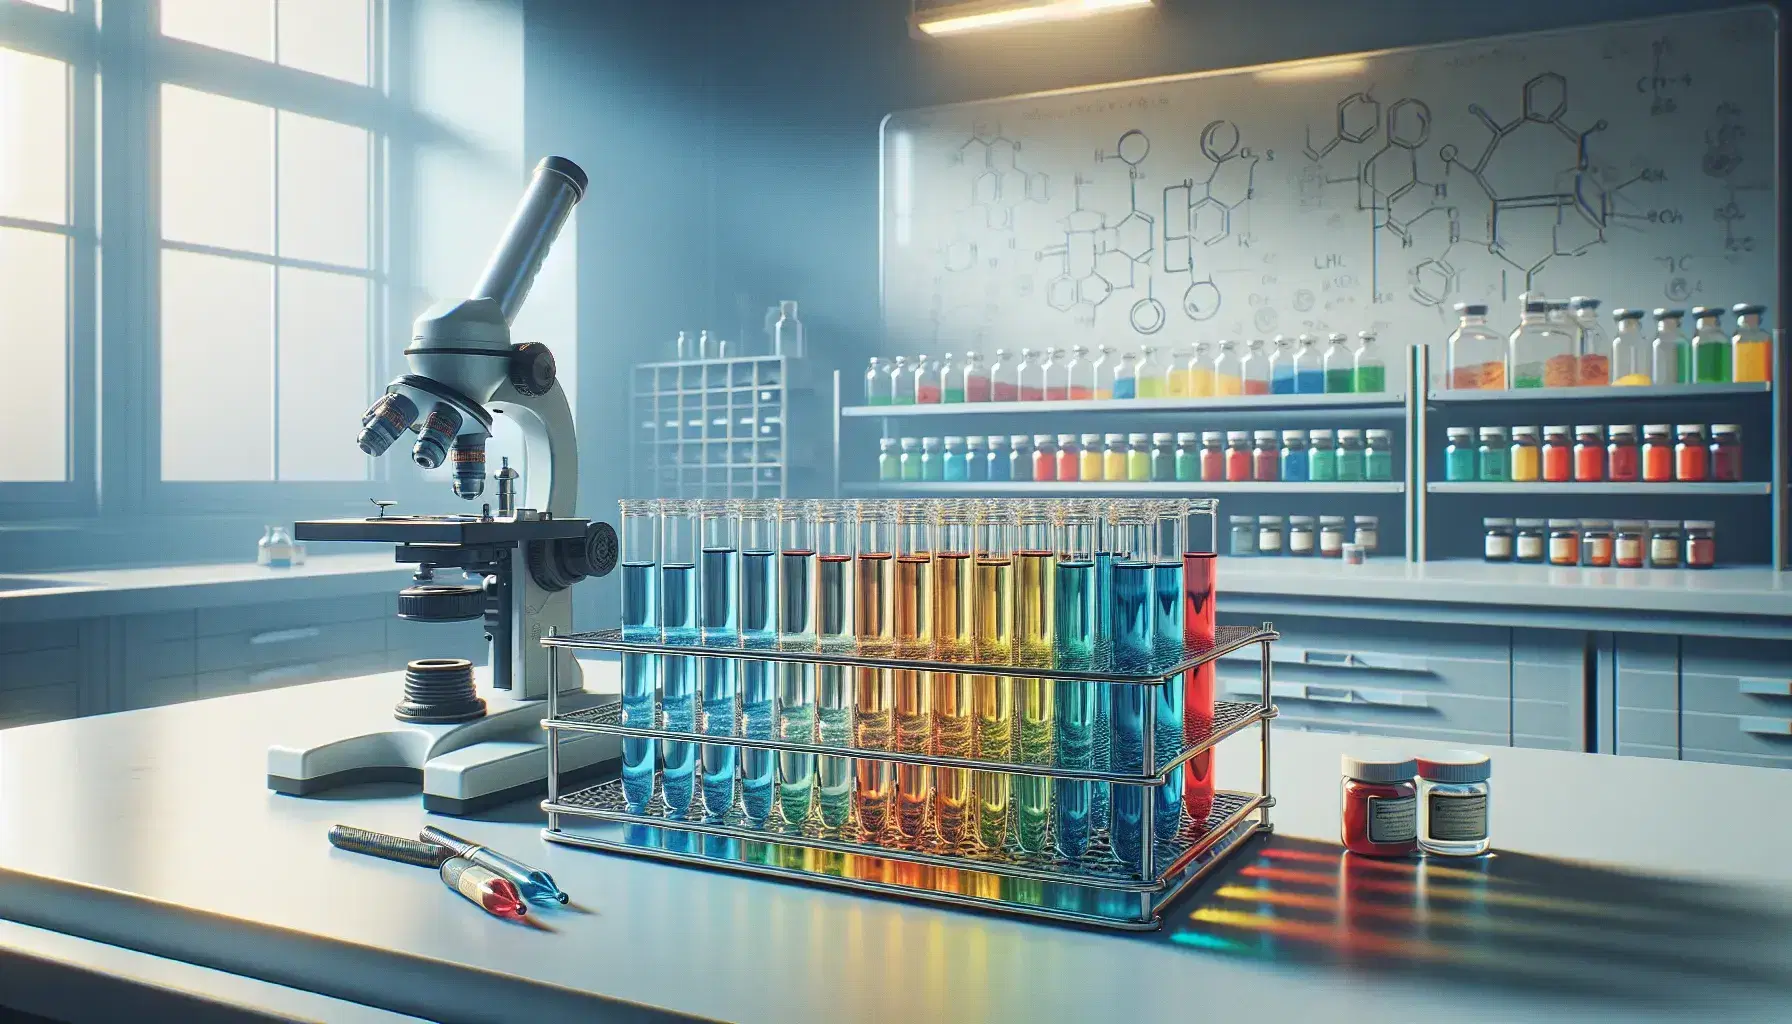 Laboratorio de investigación con tubos de ensayo de colores en soporte metálico y microscopio plateado, estantes con frascos de polvos y pizarra al fondo.